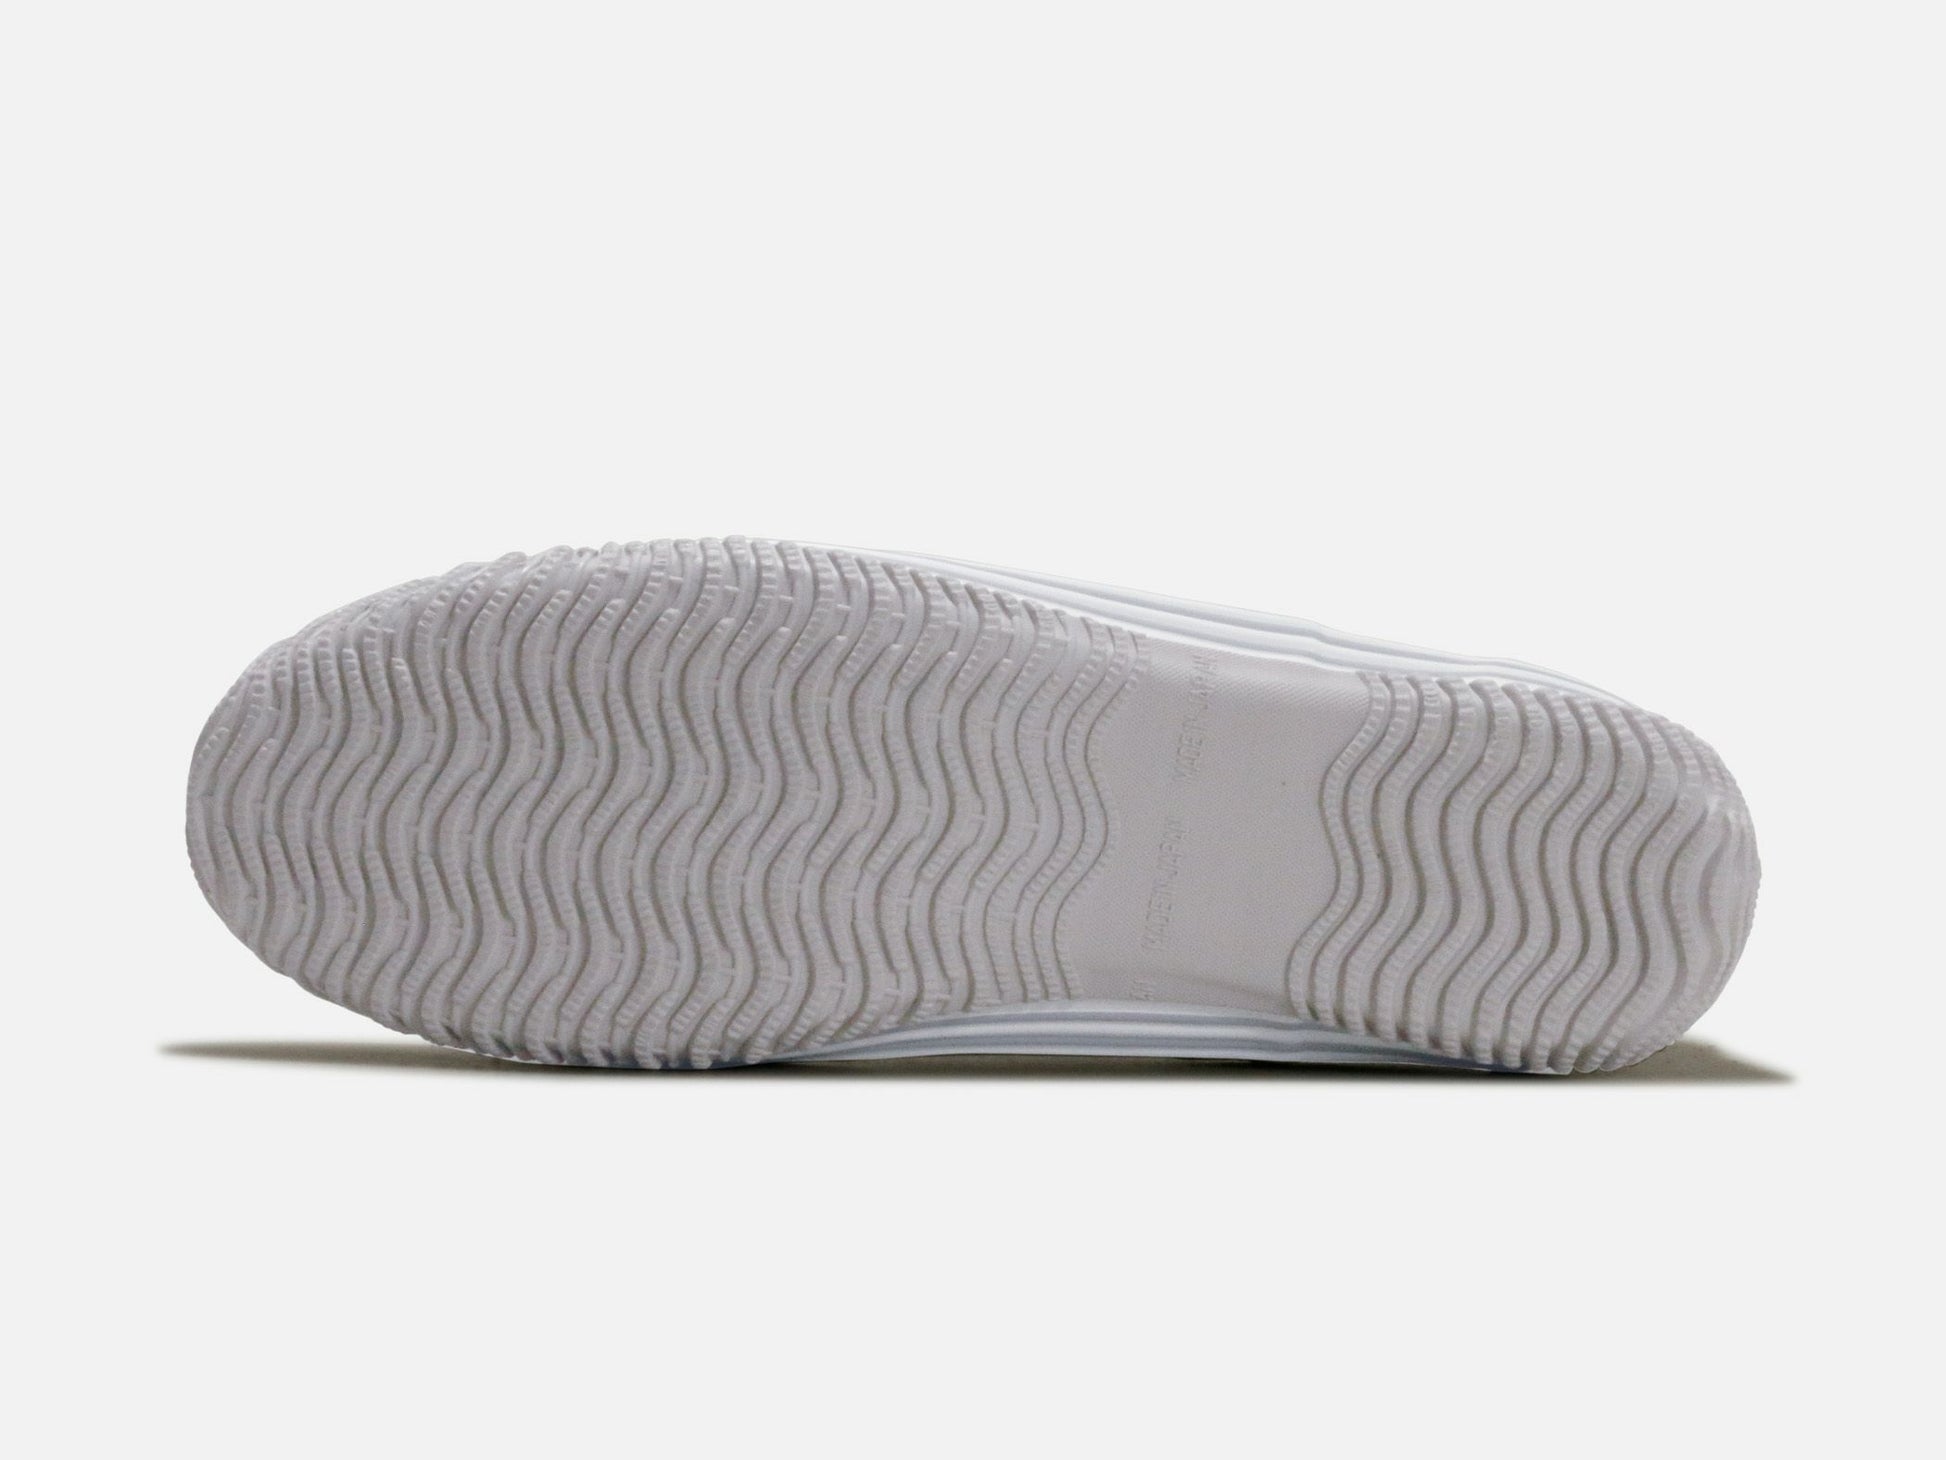 SPINGLE MOVEのスニーカー「SPM-442 Ivory」の靴底の商品画像